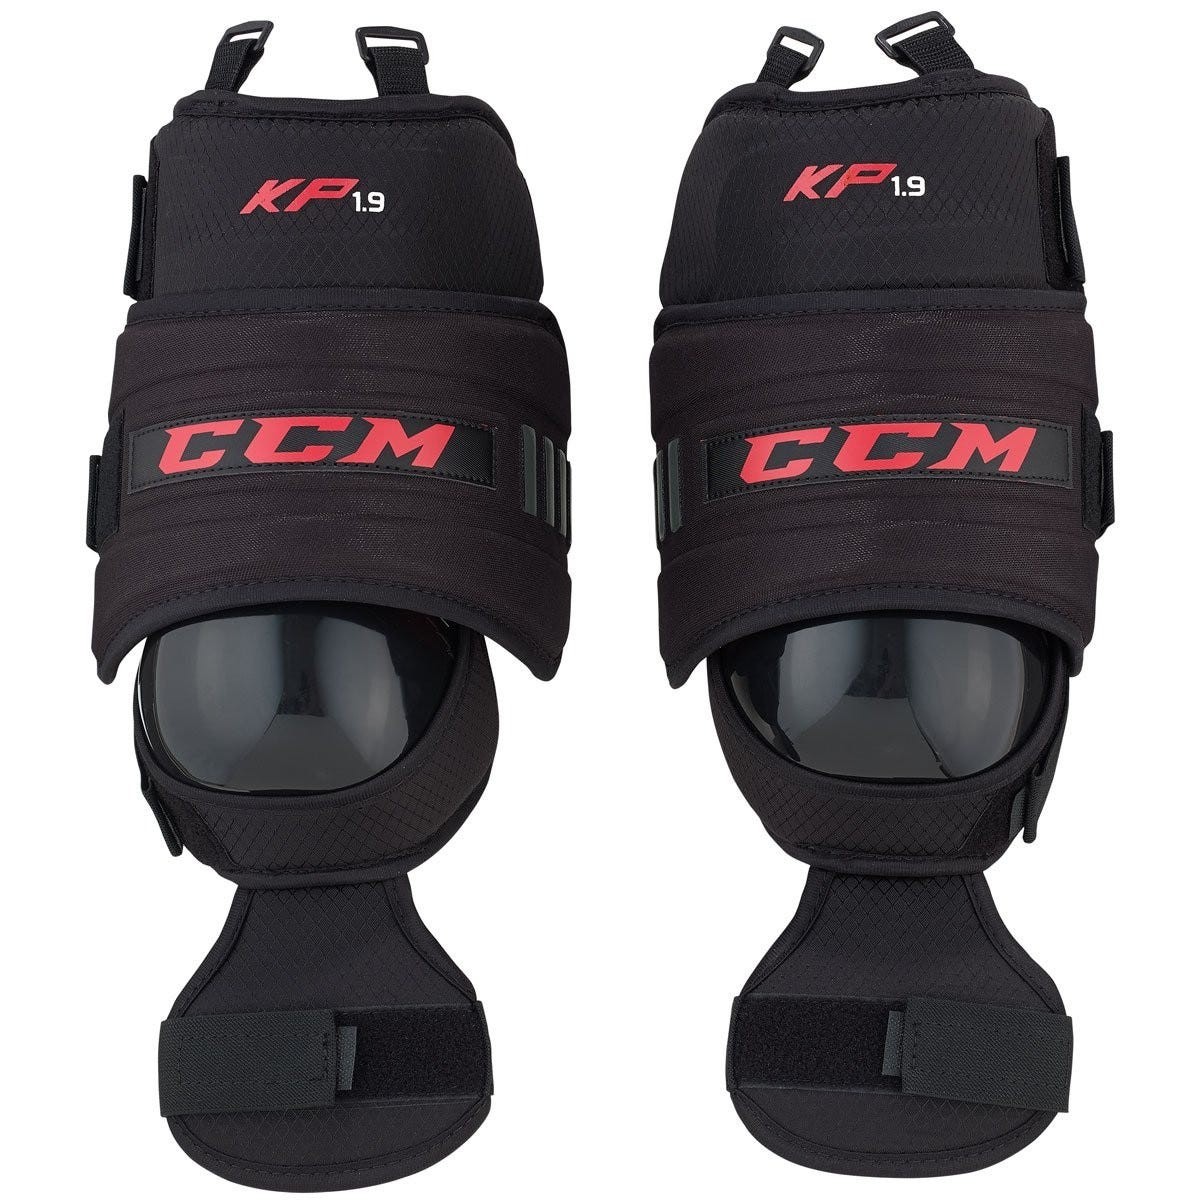 CCM KP 1.9 Intermediate Goalie Knee Protector